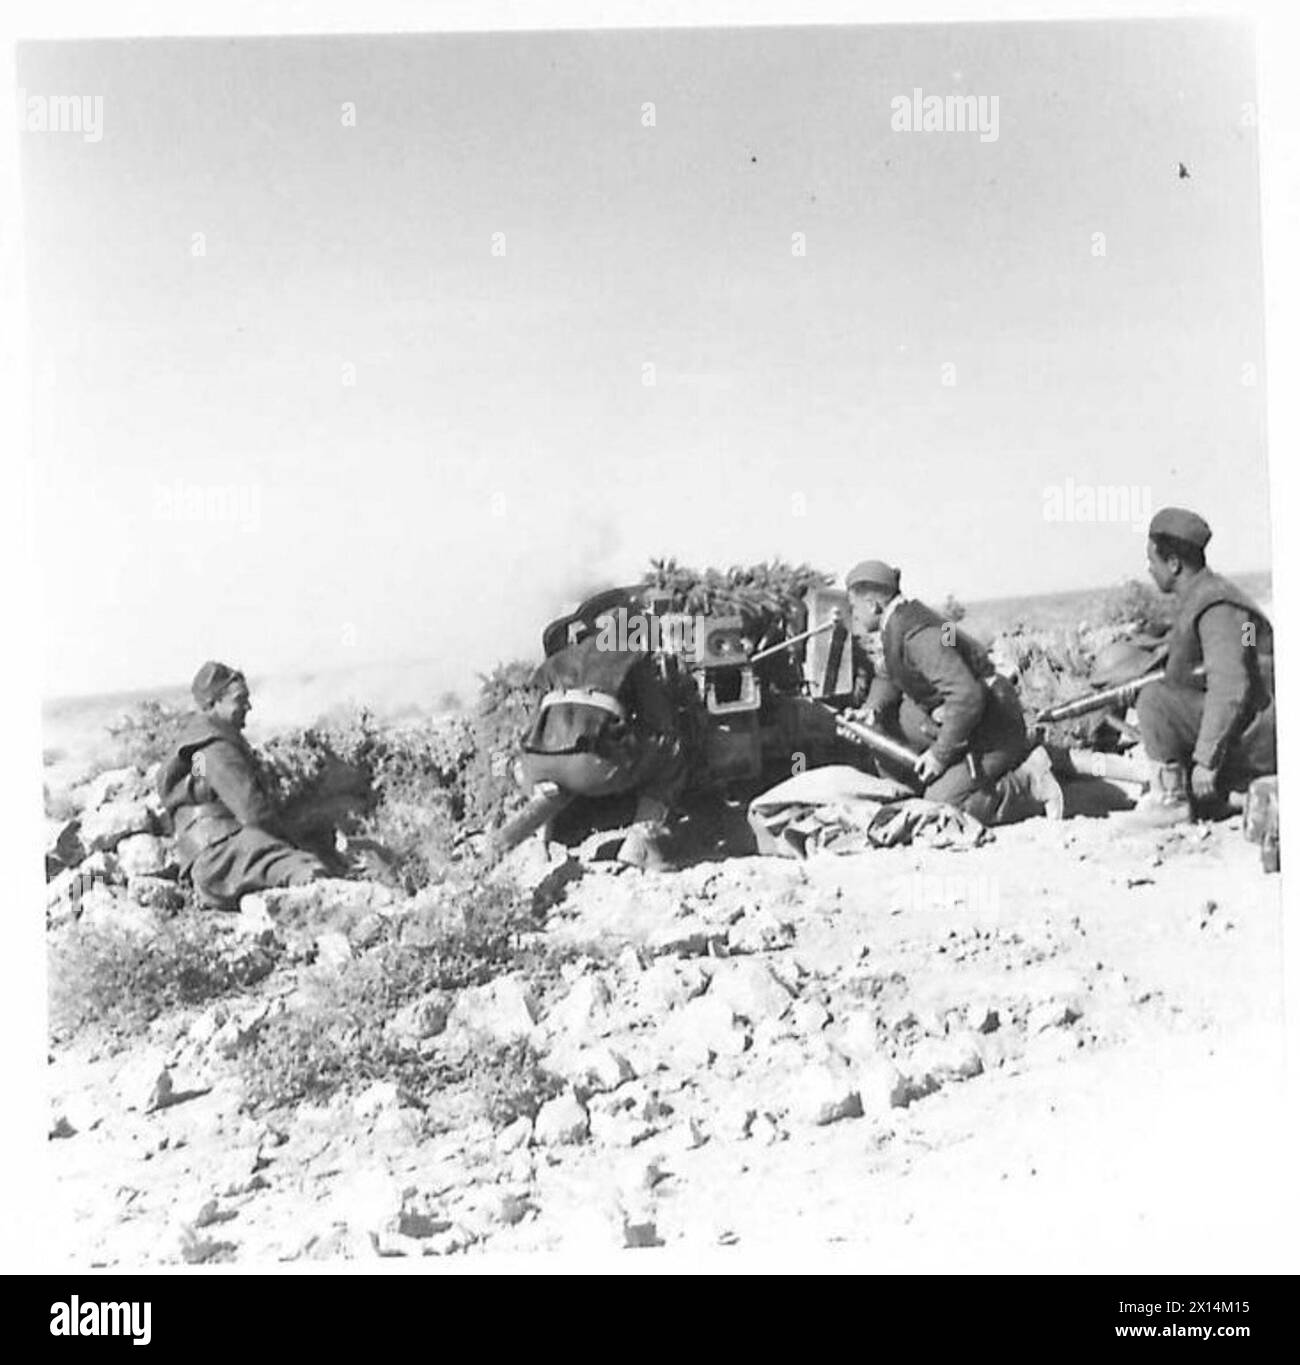 L'ARMÉE POLONAISE DANS LA CAMPAGNE DU DÉSERT occidental, 1940-1942 - troupes de (probablement) l'escadron d'artillerie antichars des Carpates tirant un canon allemand Pak 38 capturé à partir d'un poste avancé. Ces photos prises aux positions les plus avancées autour de Carmuset er Regem (Karmusat Ar Rijam) près de Gazala, montrent des unités d'infanterie et d'artillerie de la Brigade indépendante polonaise de fusils des Carpates face aux forces allemandes et italiennes Armée britannique, Armée polonaise, Forces armées polonaises à l'Ouest, Brigade indépendante de fusils des Carpates, forces armées polonaises dans l'Ouest, Brigade indépendante des Carpates, Carpates Banque D'Images